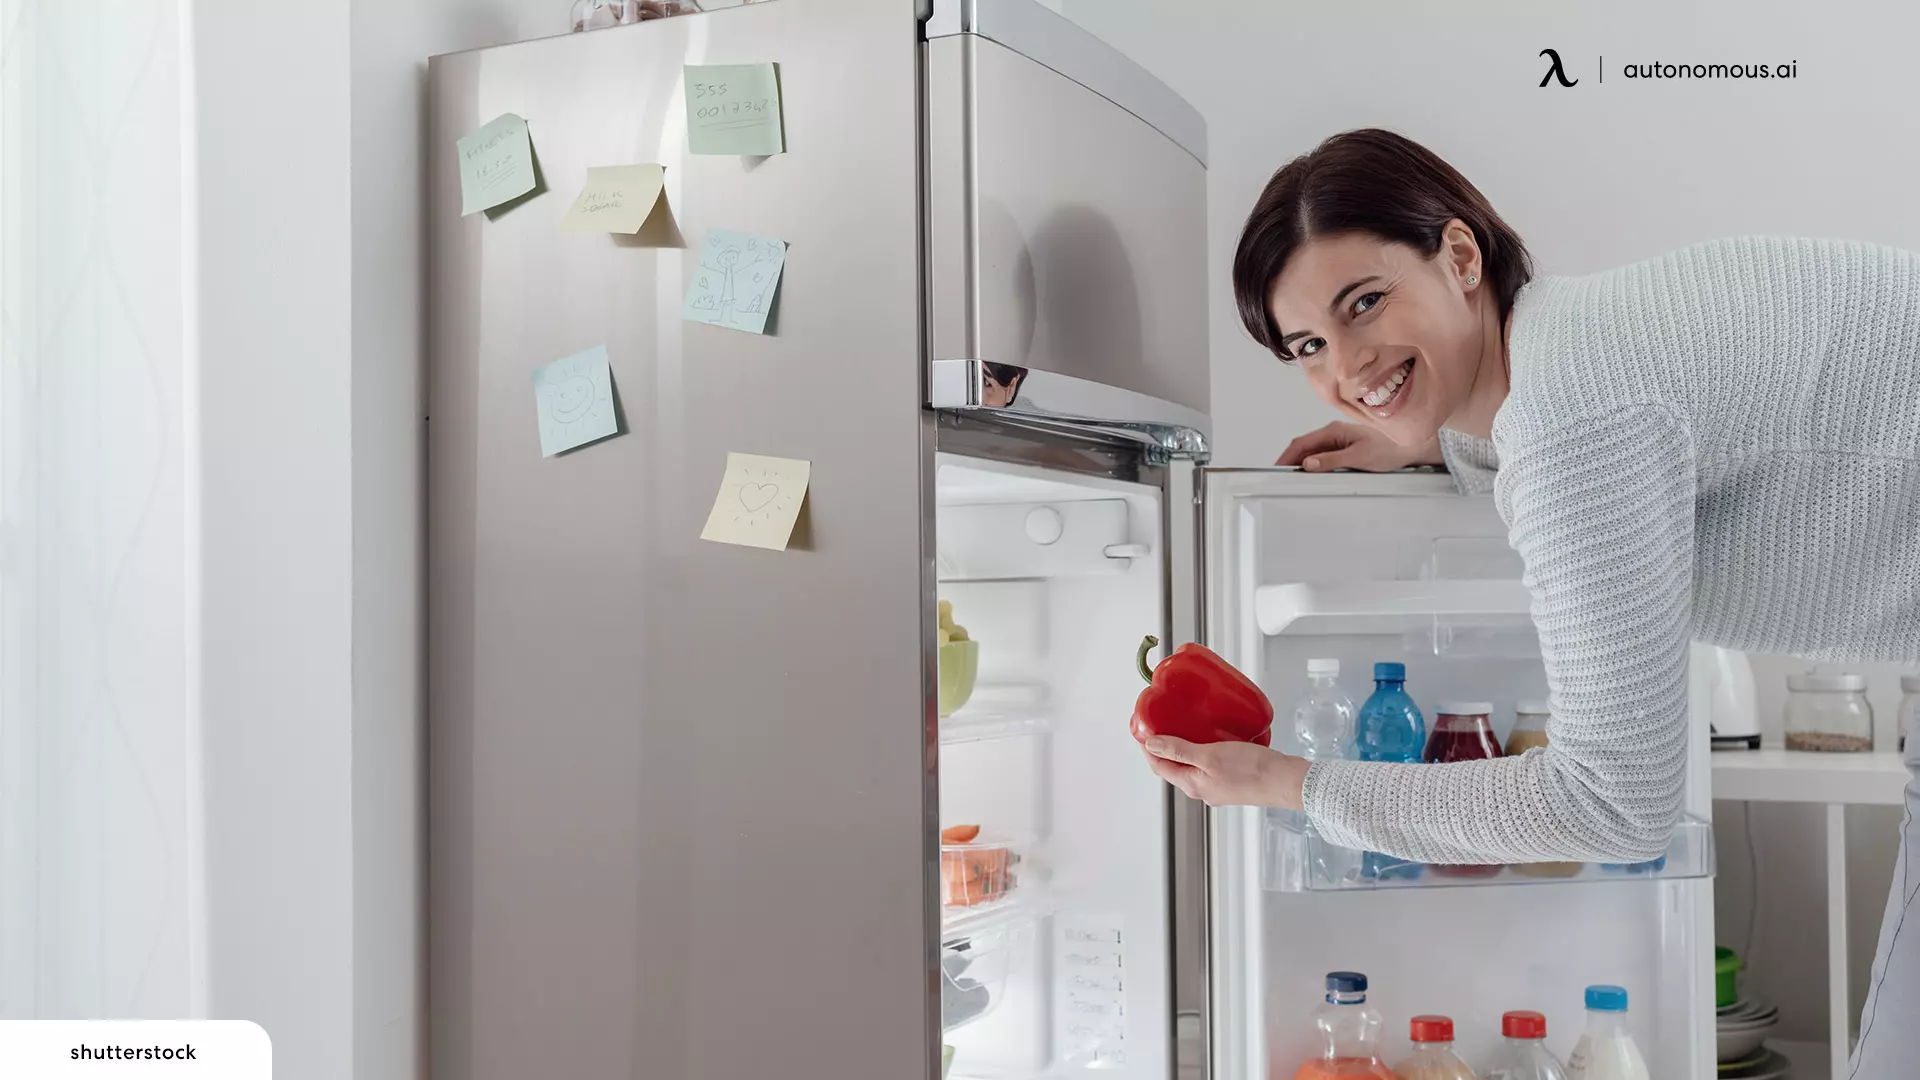 Refrigerators - adu appliances